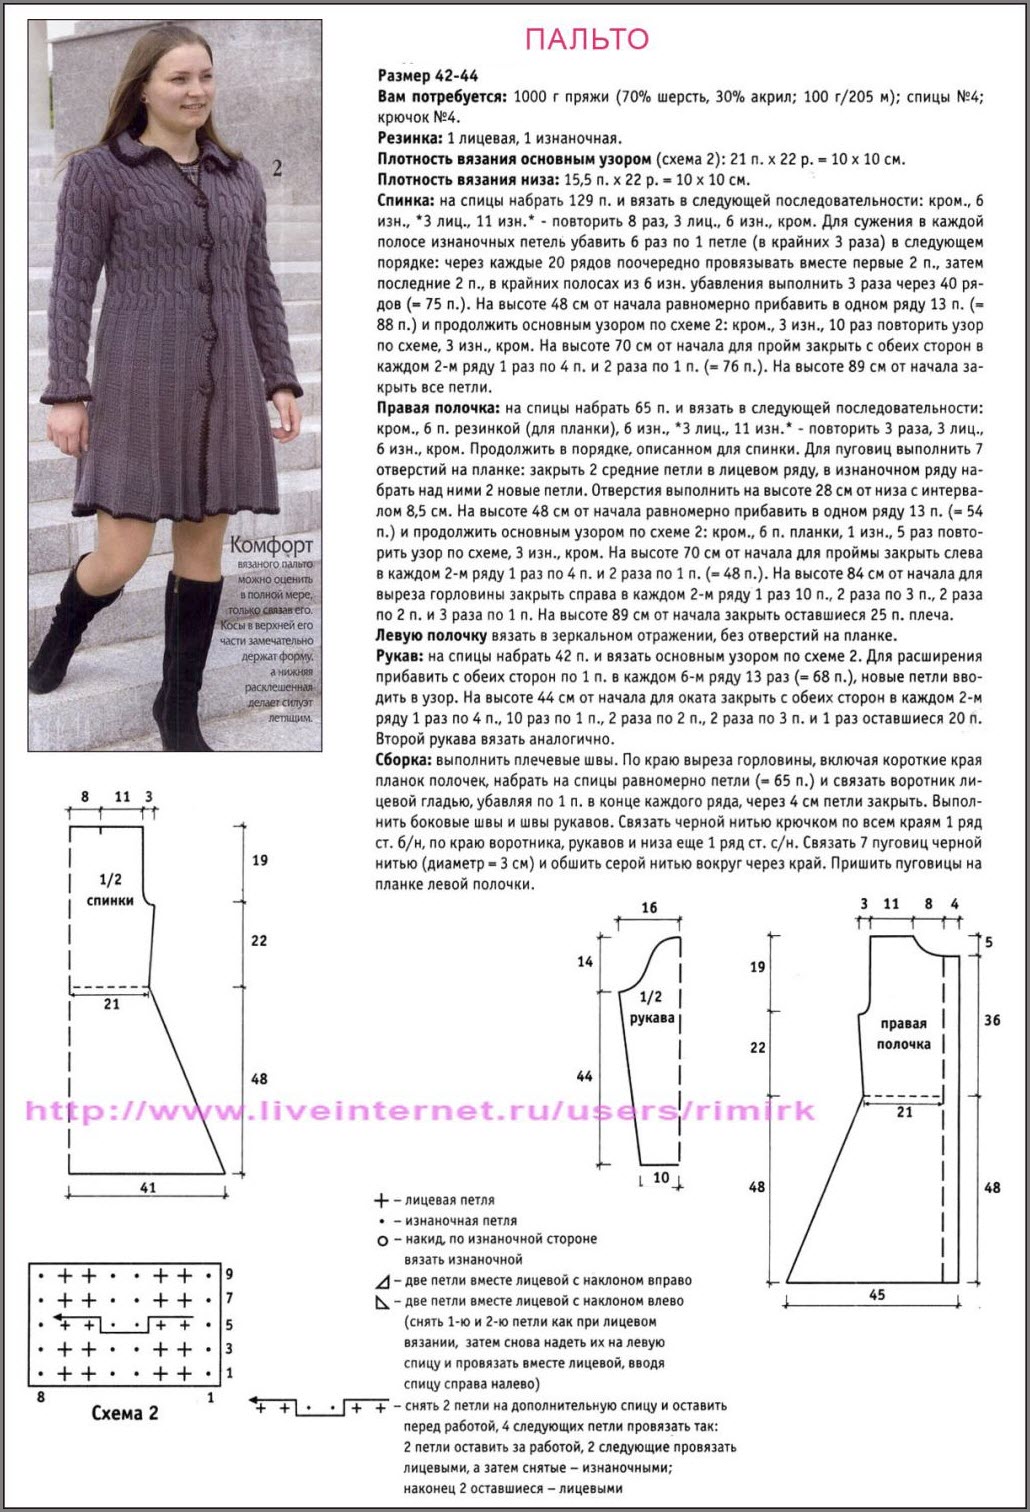 Как связать пальто спицами и крючком - пошаговое описание схем, советы, фото примеры